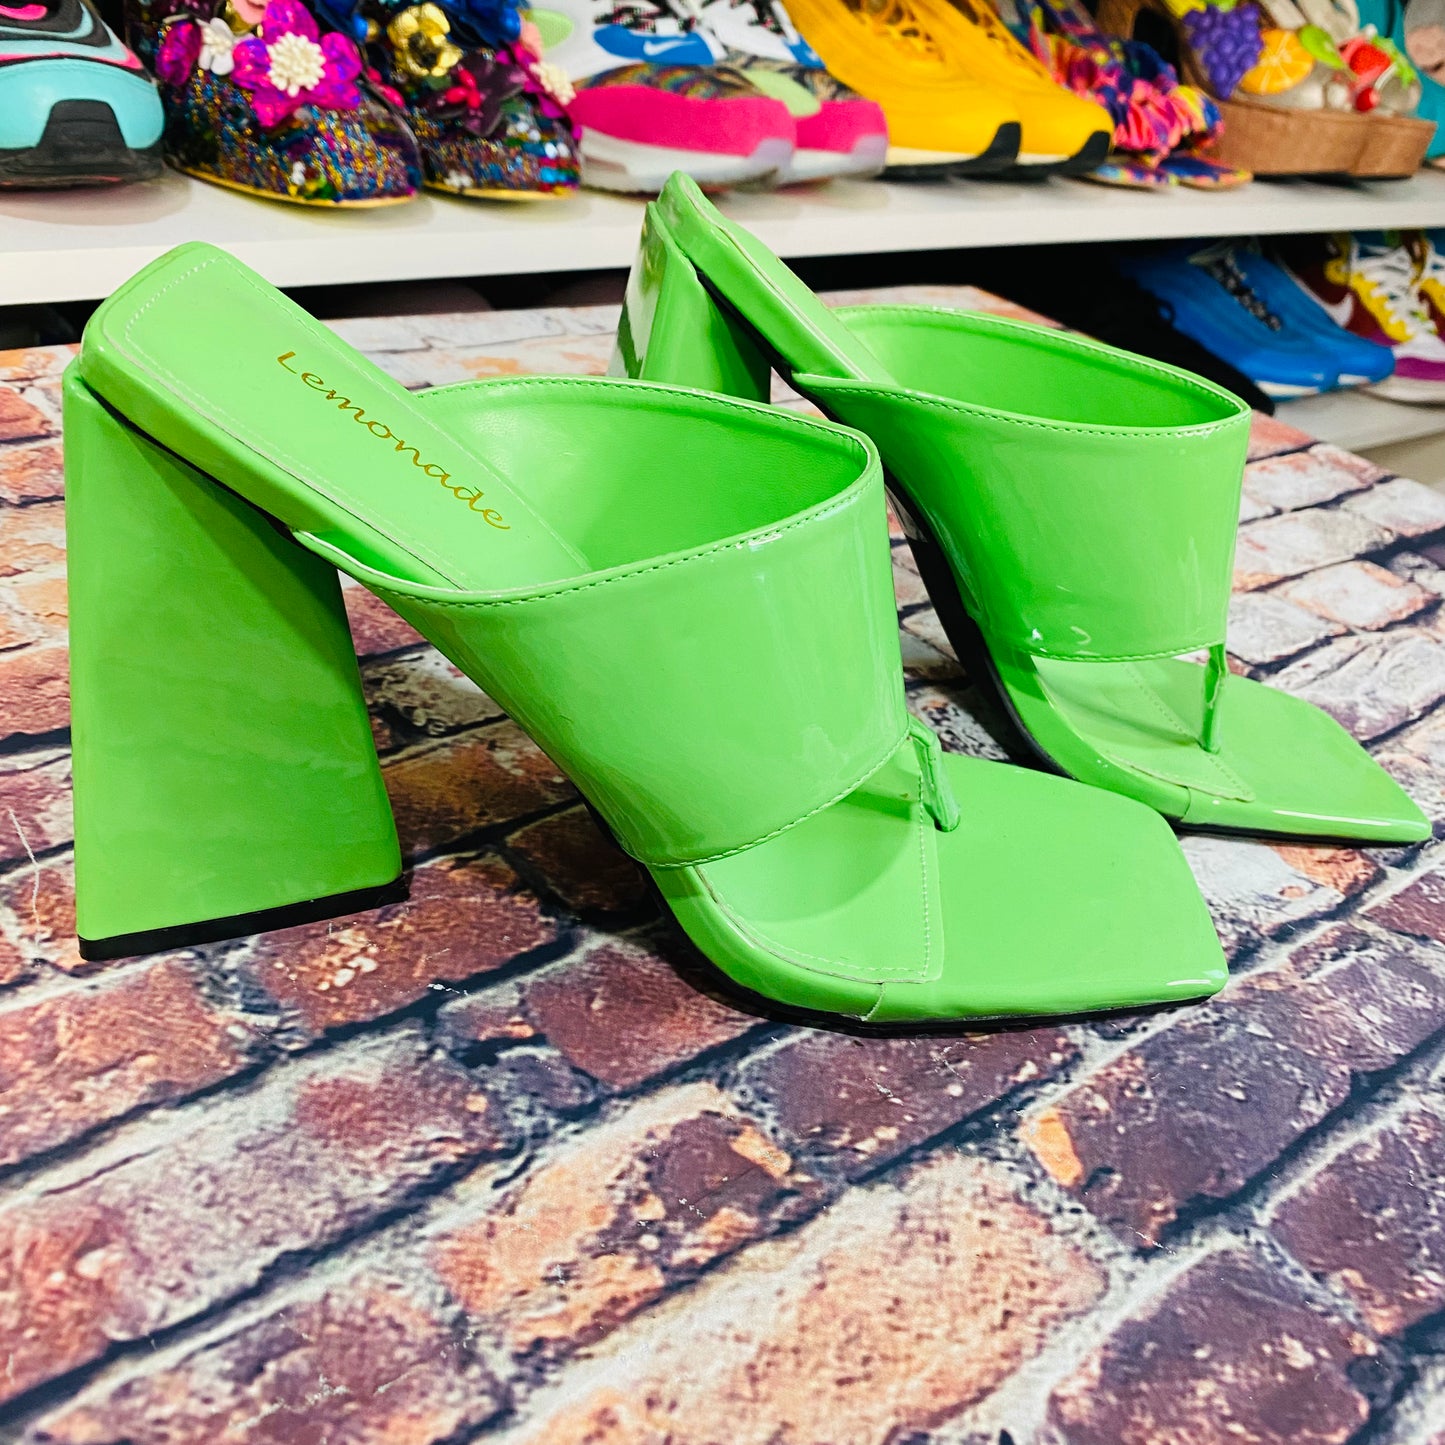 Green Thong Heels